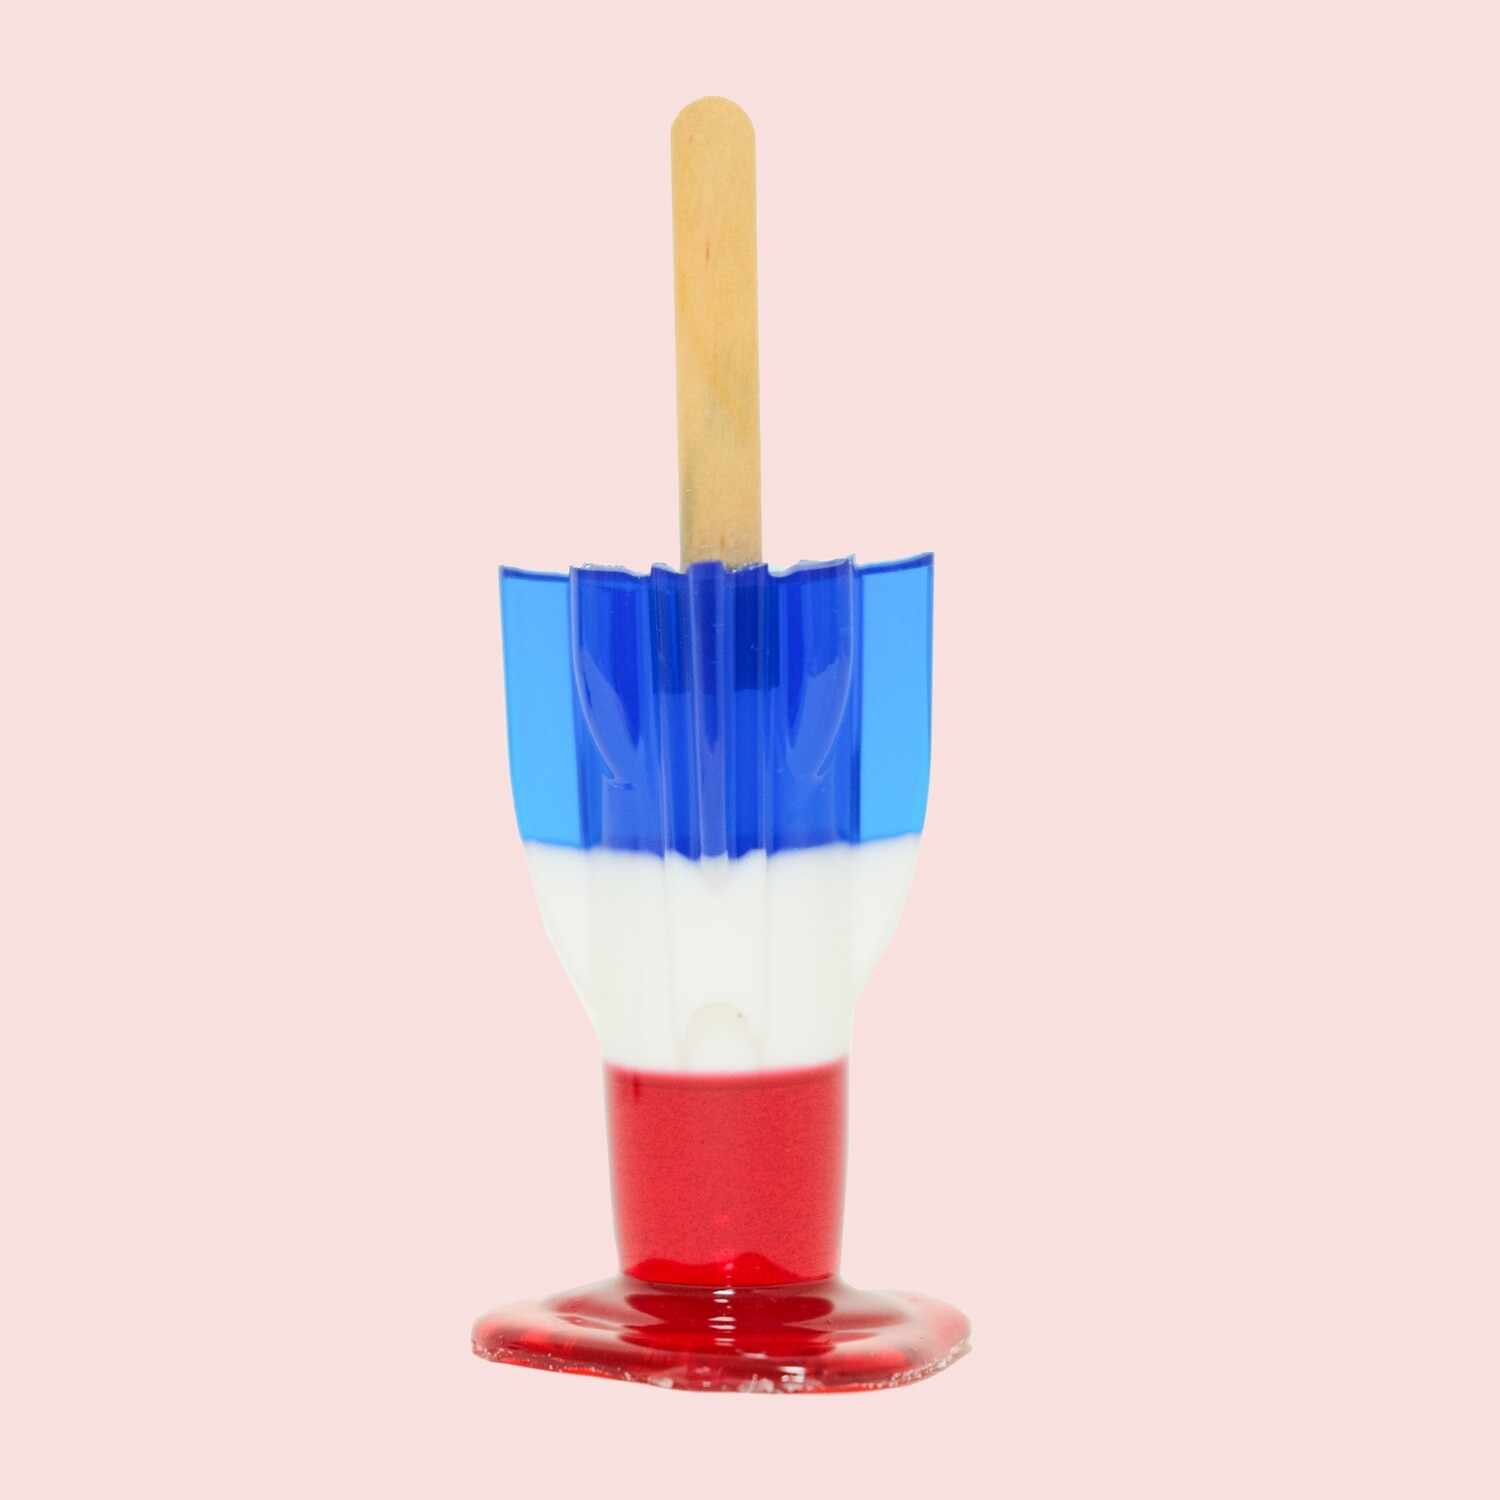 You're The Bomb - Original Melting Pops - Melting Popsicle Resin Art